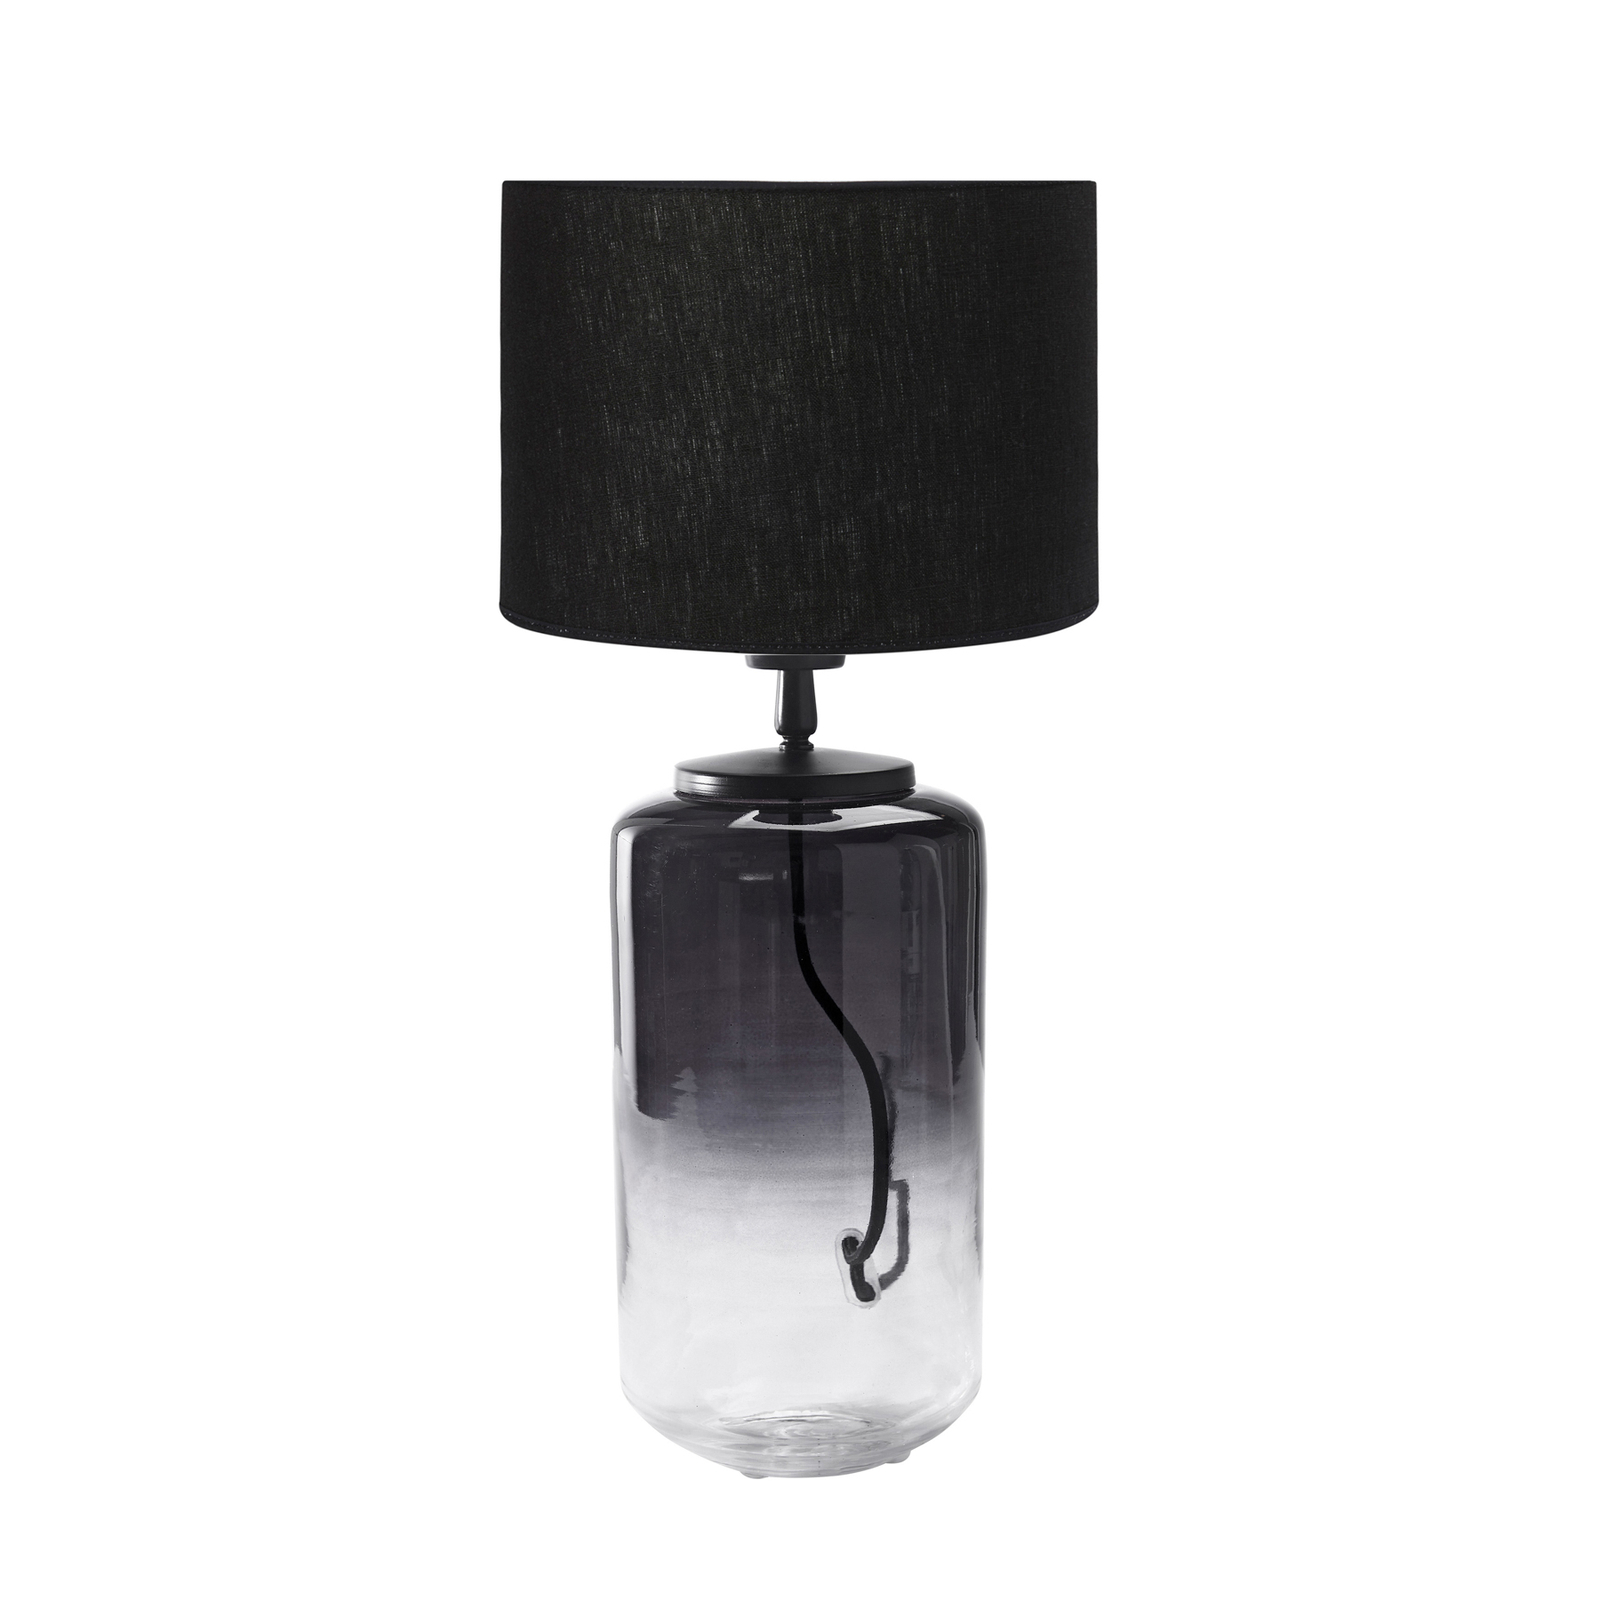 PR Home Gunnie table lamp, black/clear glass base